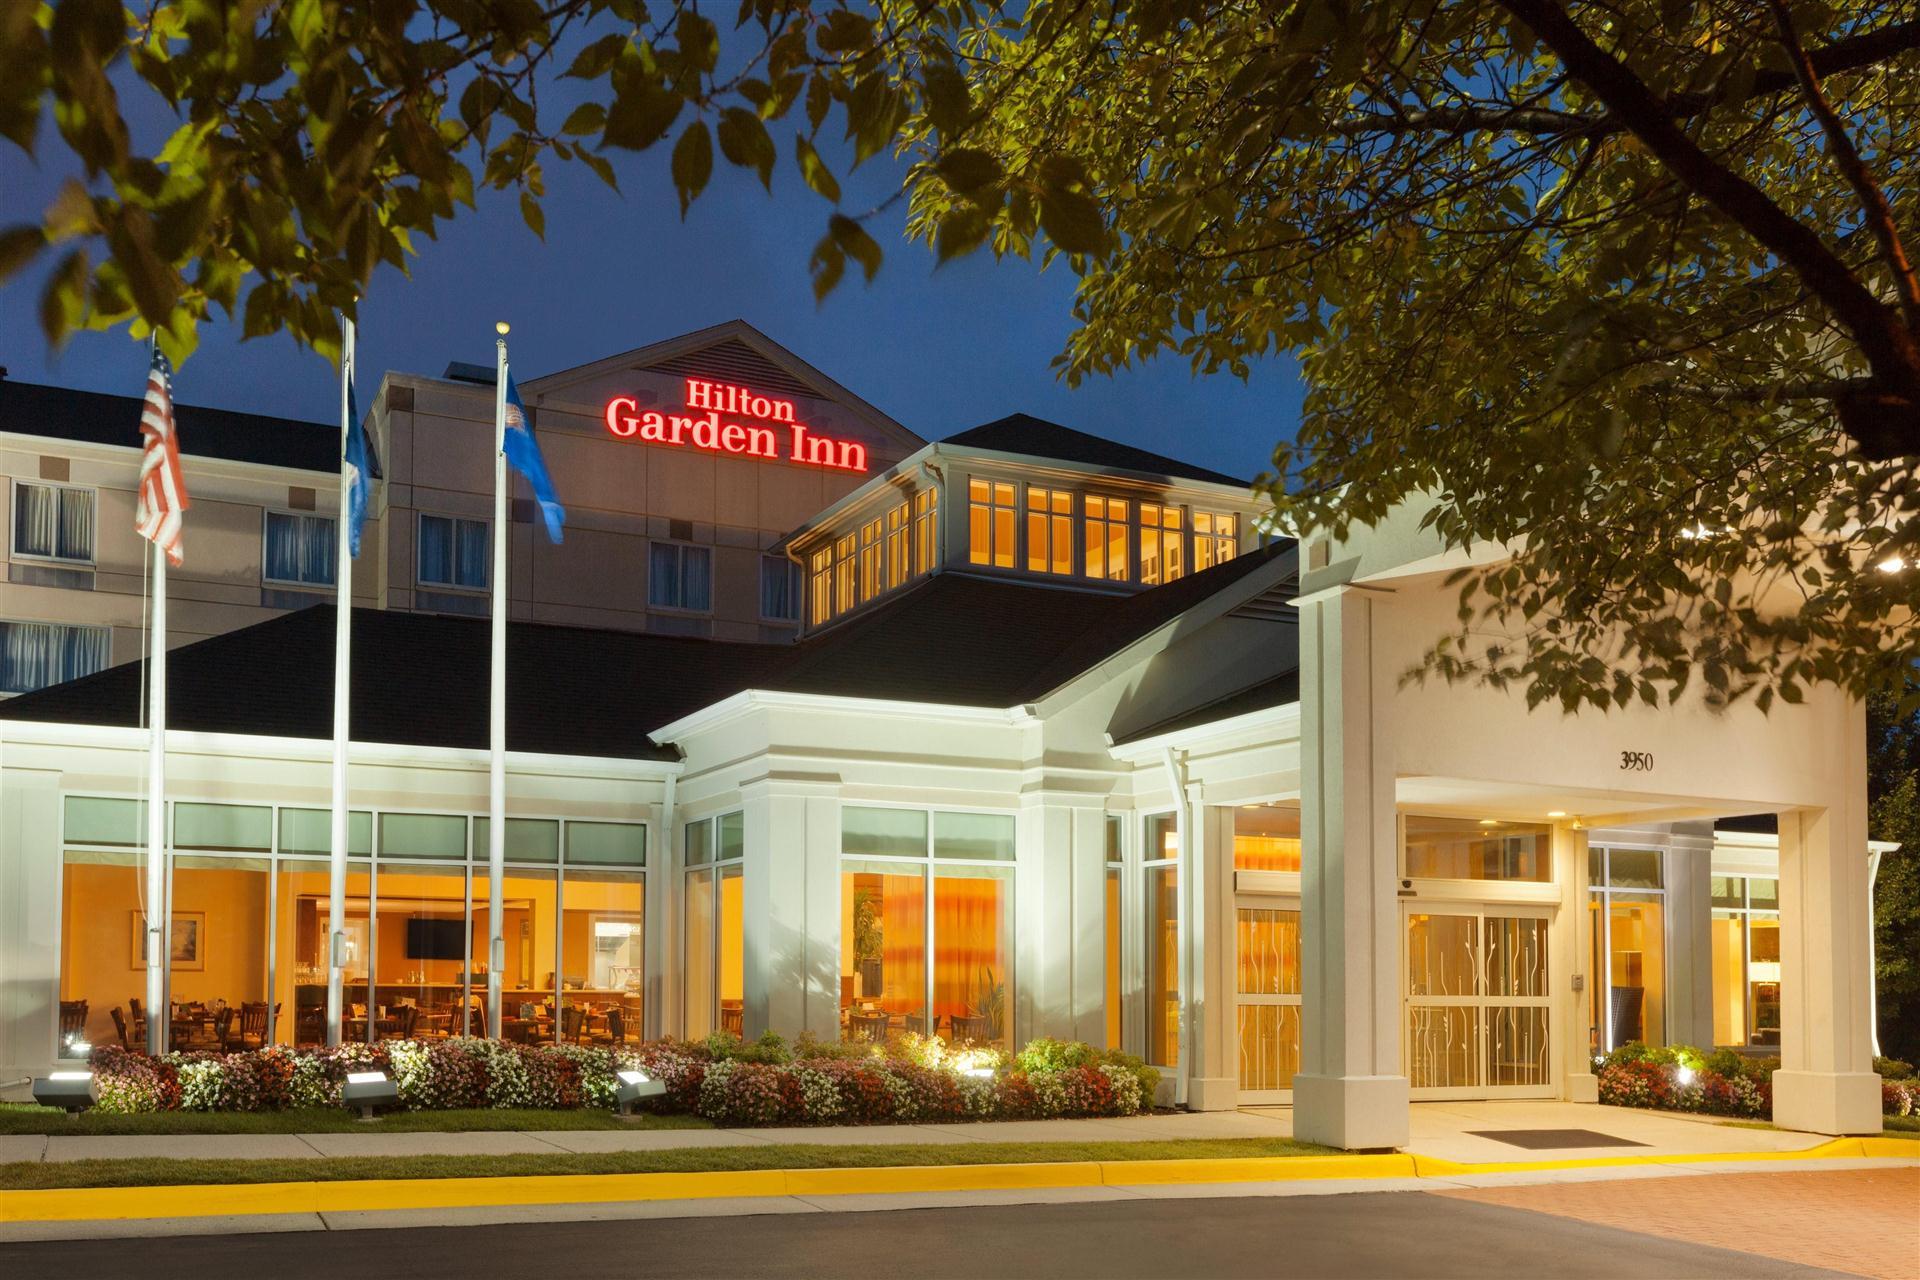 Hilton Garden Inn Fairfax in Fairfax, VA